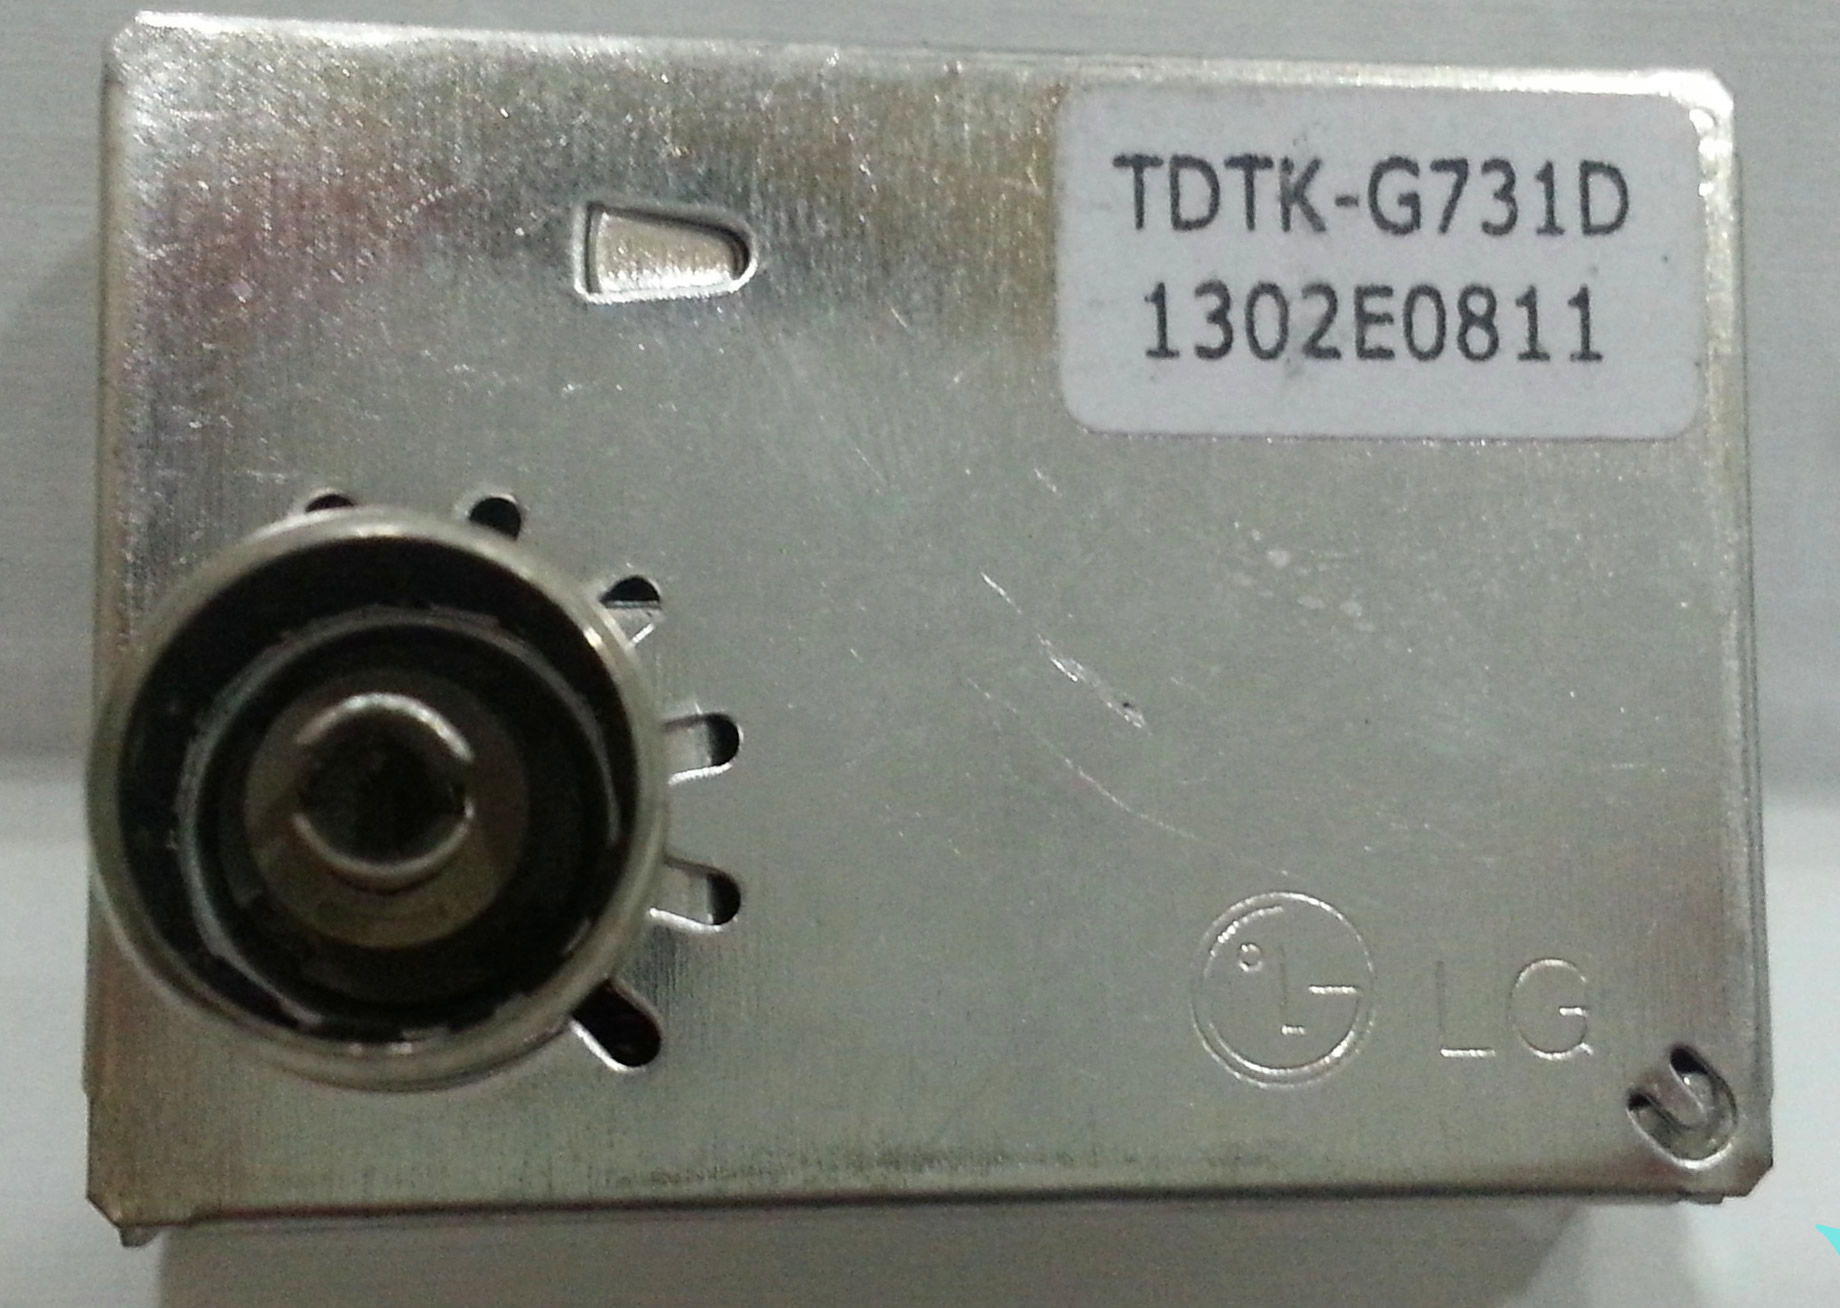 TDTK-G731D LG tuner